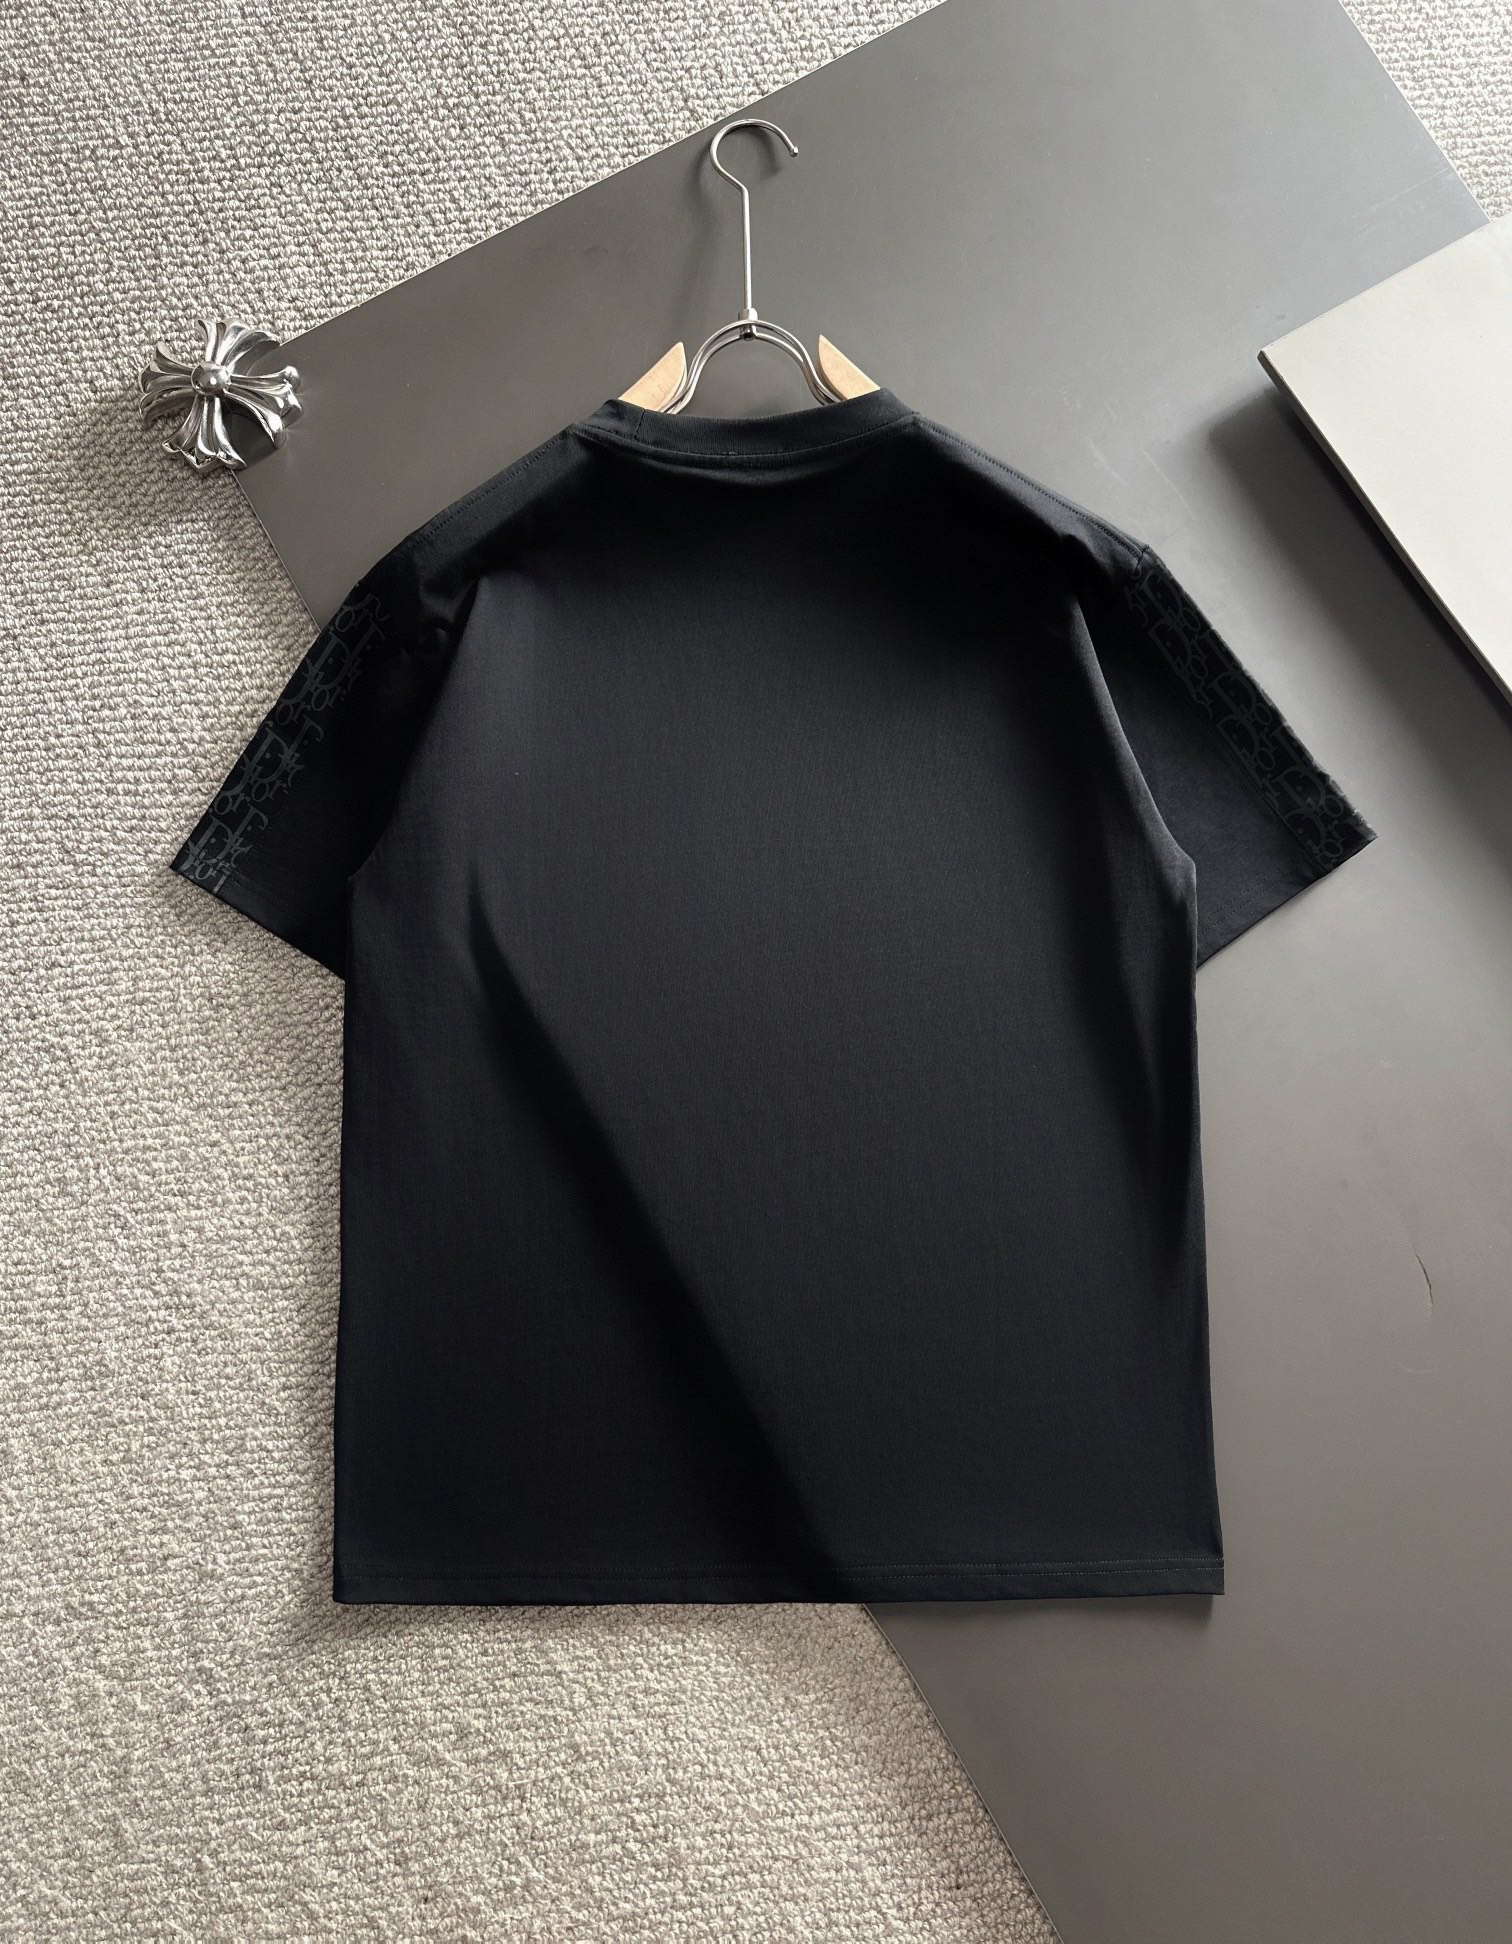 爆買い大得価 ディオール tシャツ激安通販 短袖 品質保証 トップス 純綿 シンプル 人気新品 柔らかい ブラック_8